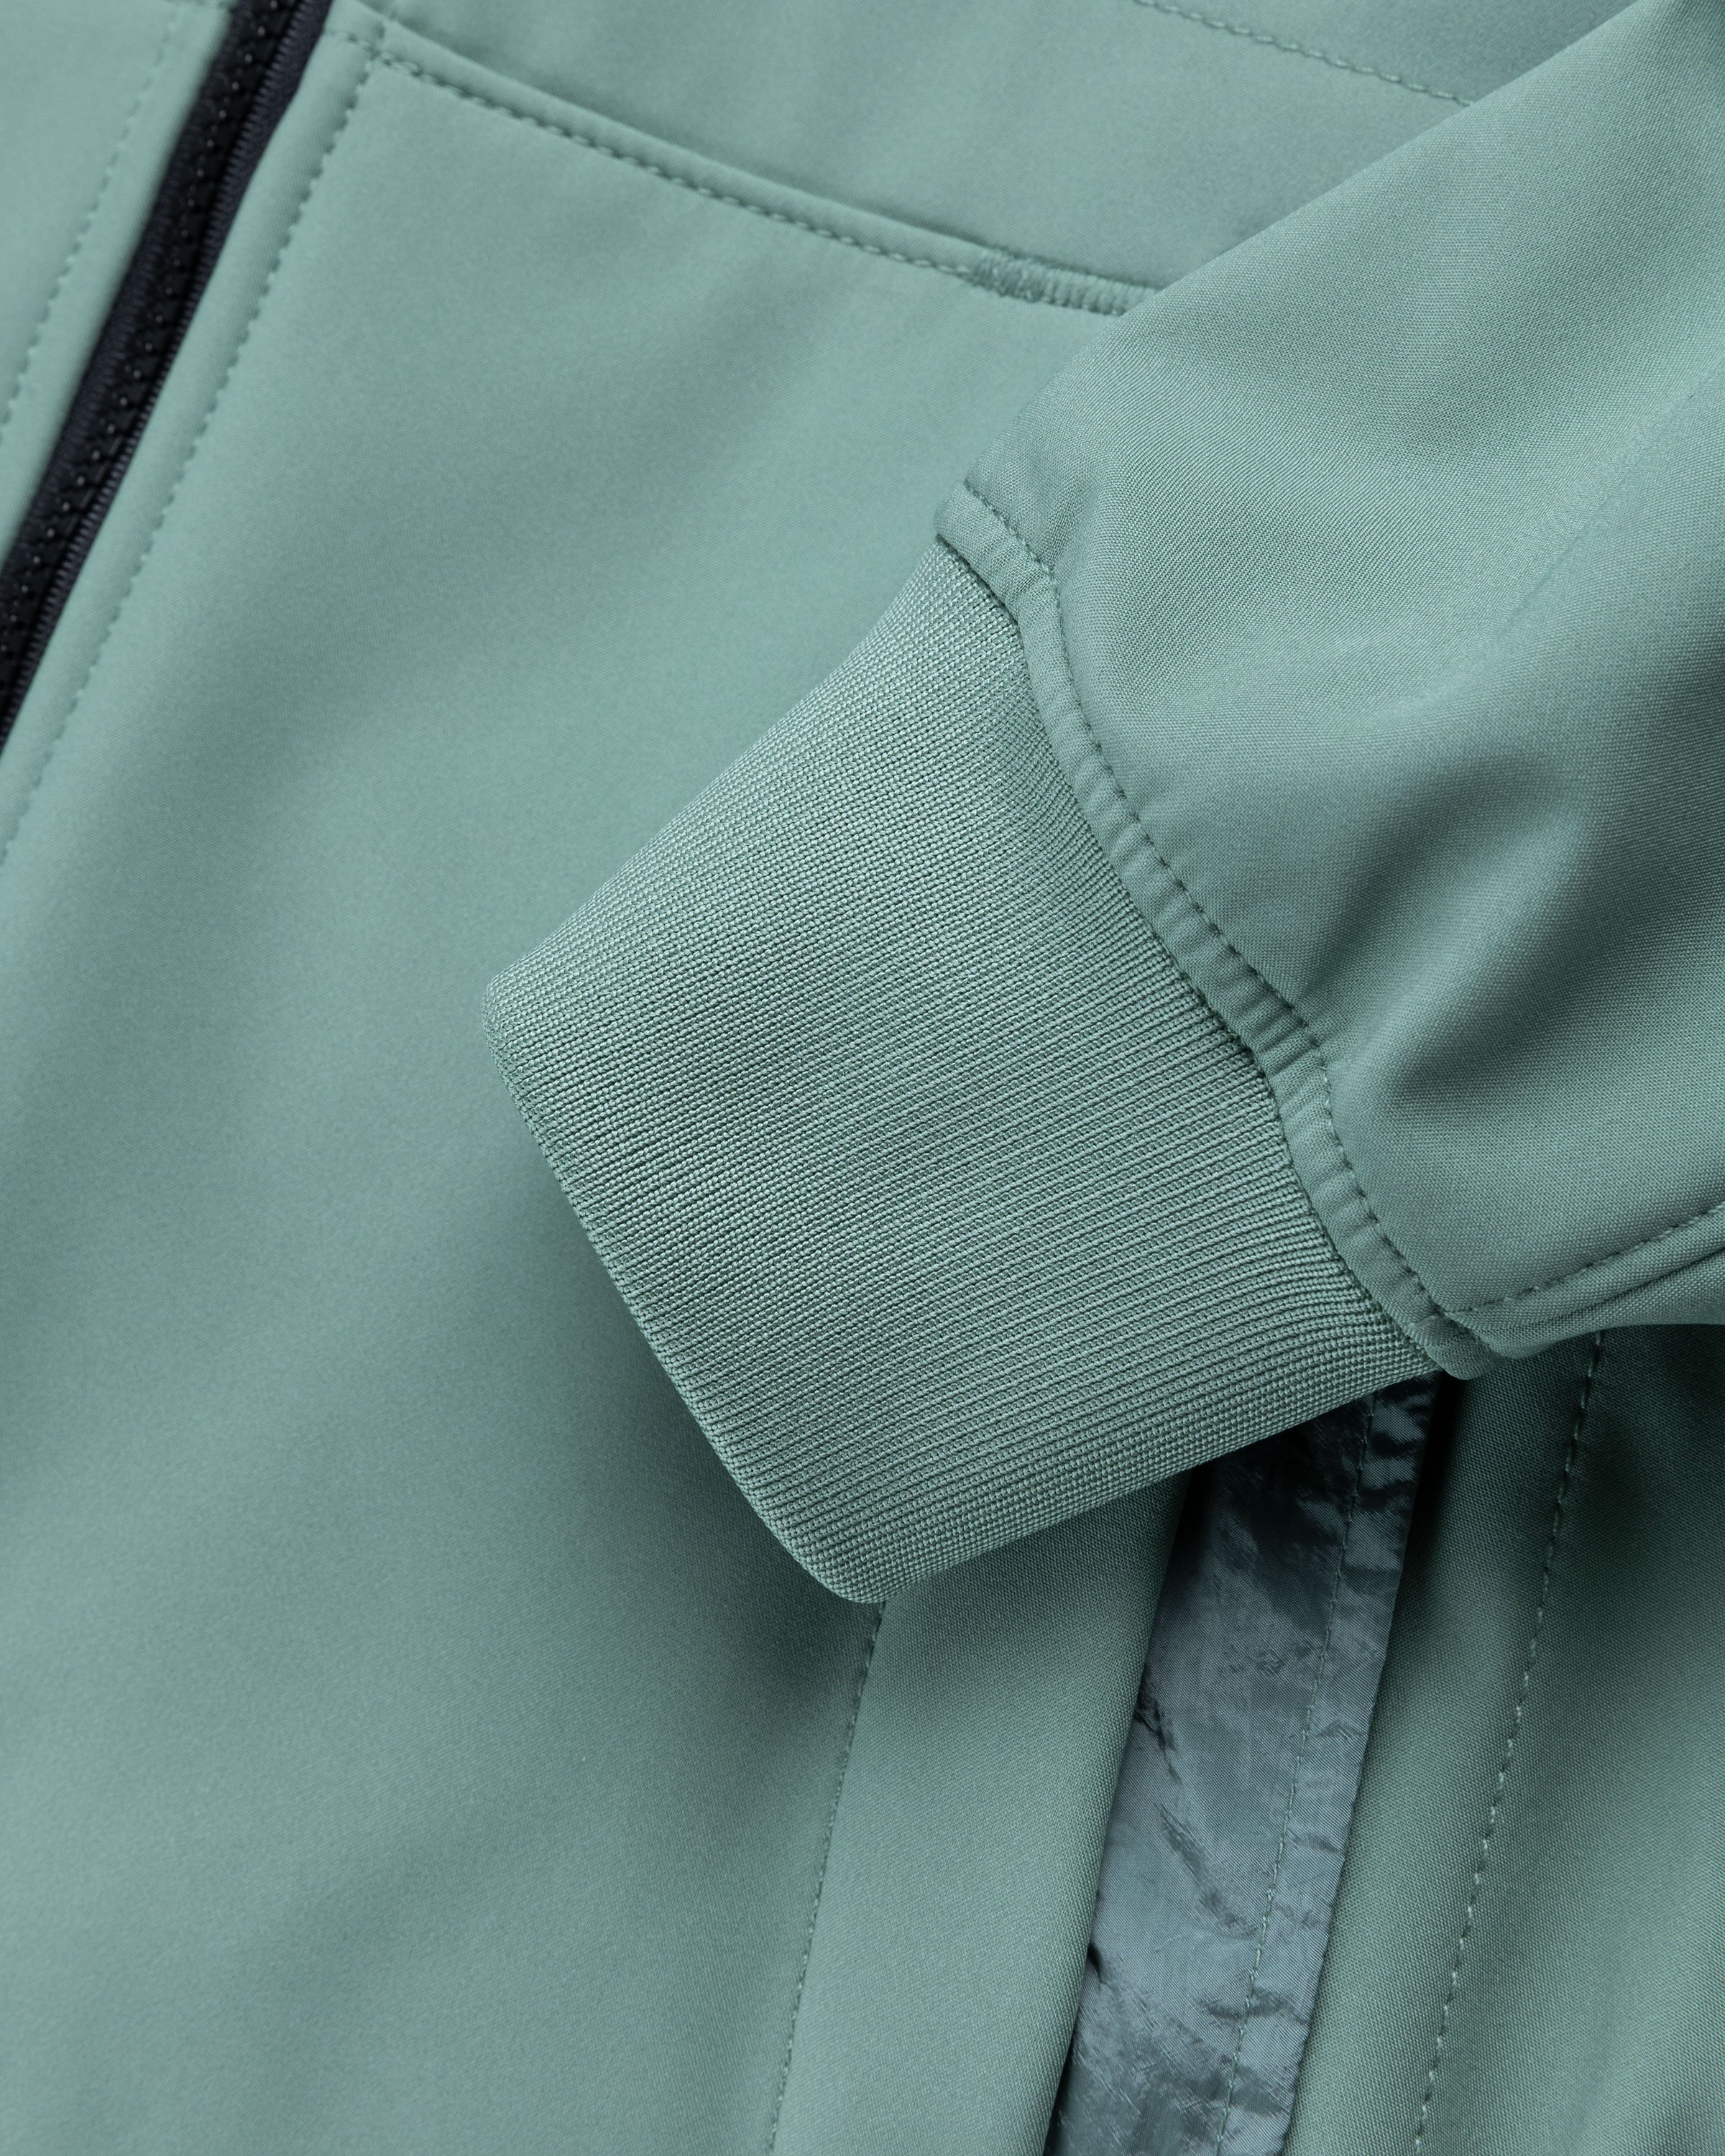 Stone Island - Soft Shell Hooded Jacket Sage - Clothing - Green - Image 6